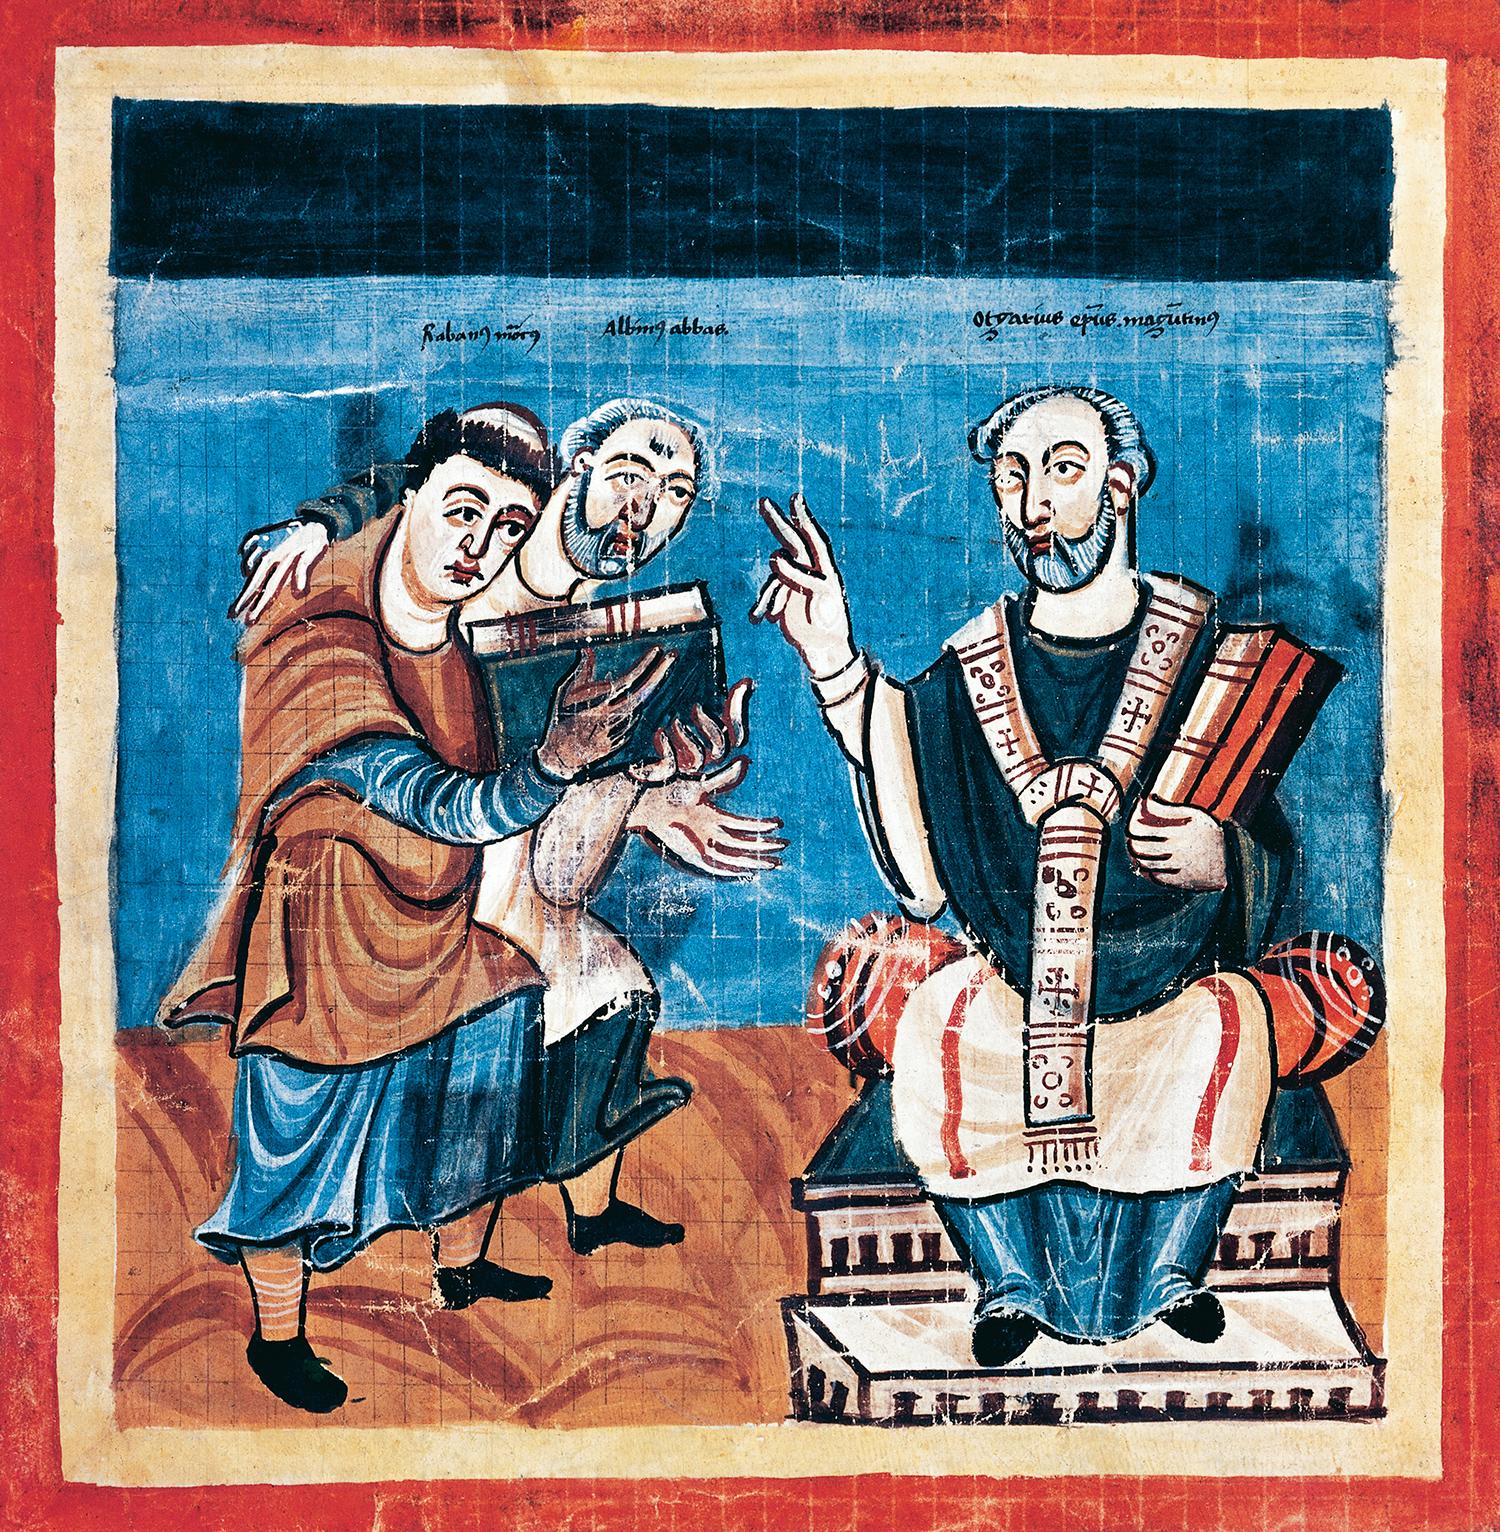 Alkuín privádza pred mohučského arcibiskupa Otgara svojho žiaka Hrabana, ktorému sám dal prímenie Maurus. Miniatúra z fuldského manuskriptu z 9. storočia.